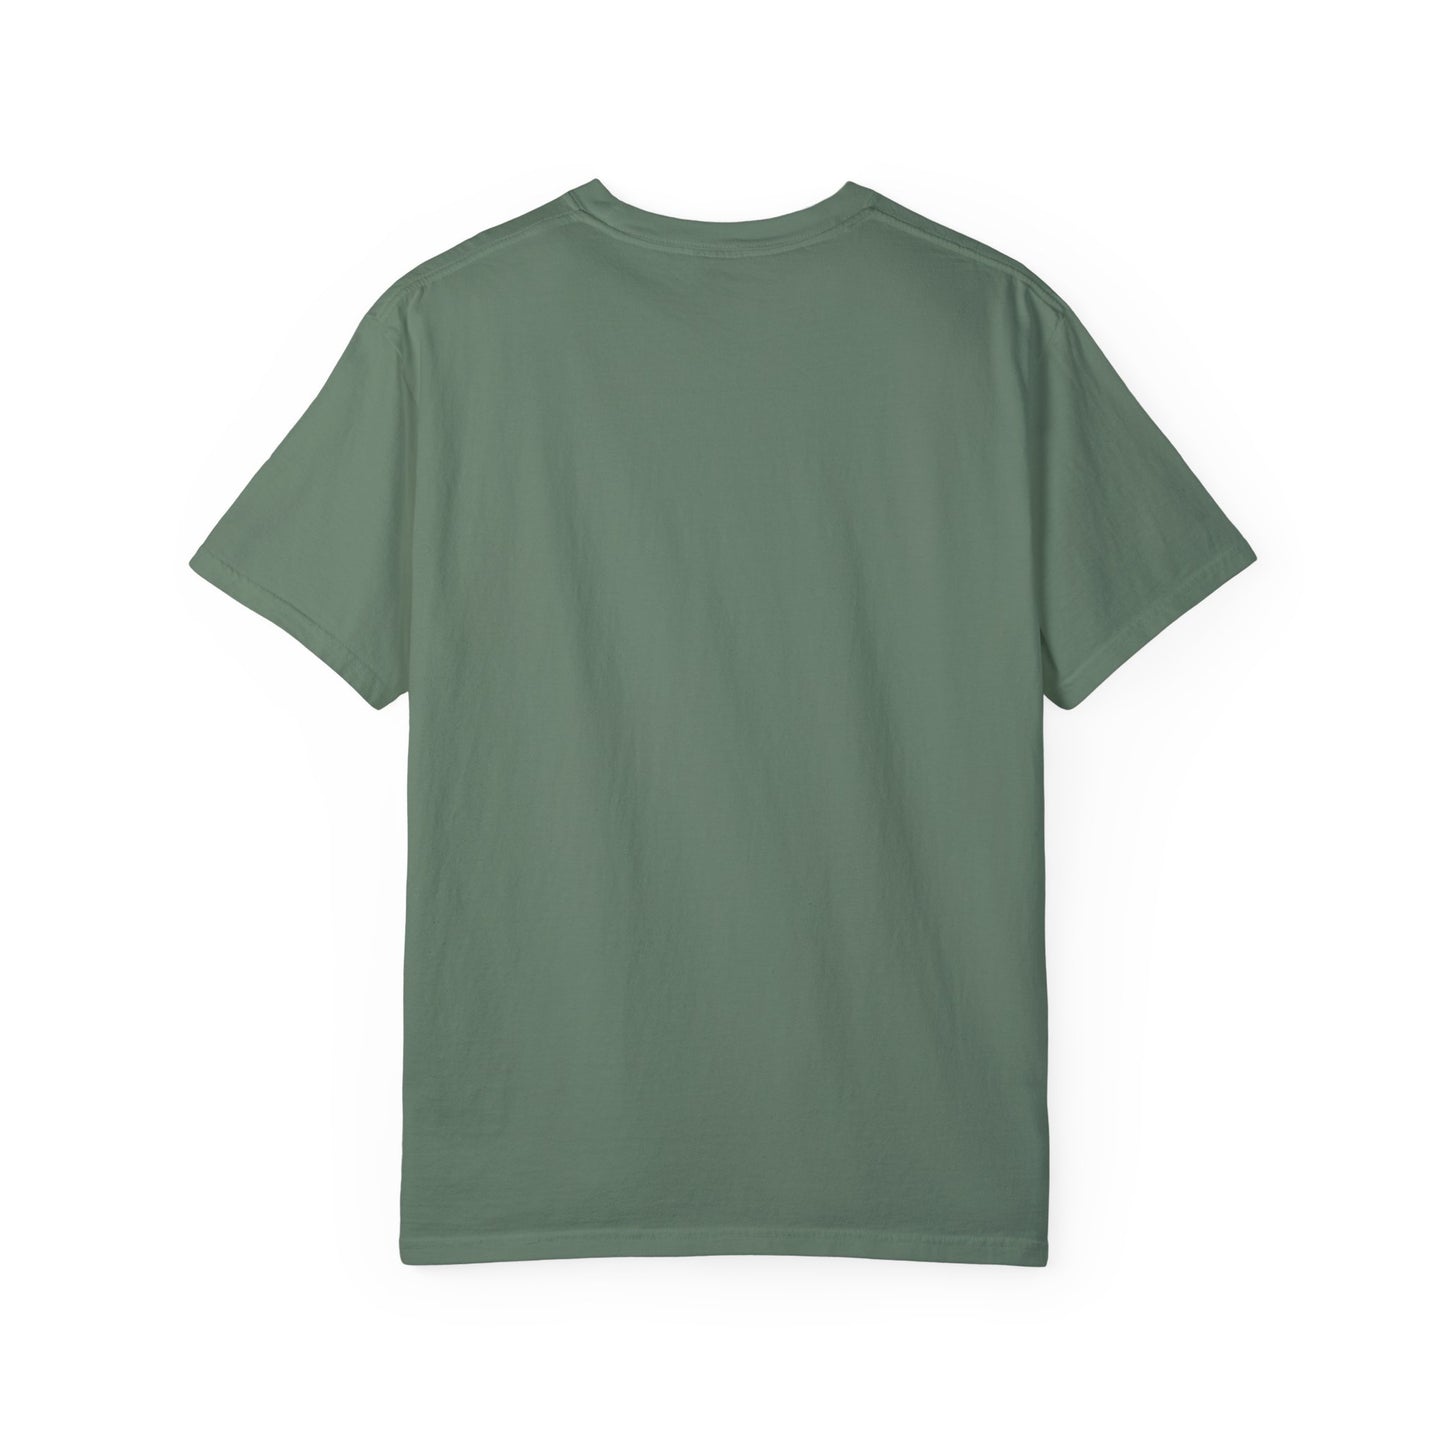 Socratezzz is an Attitude - Unisex Garment-Dyed T-shirt